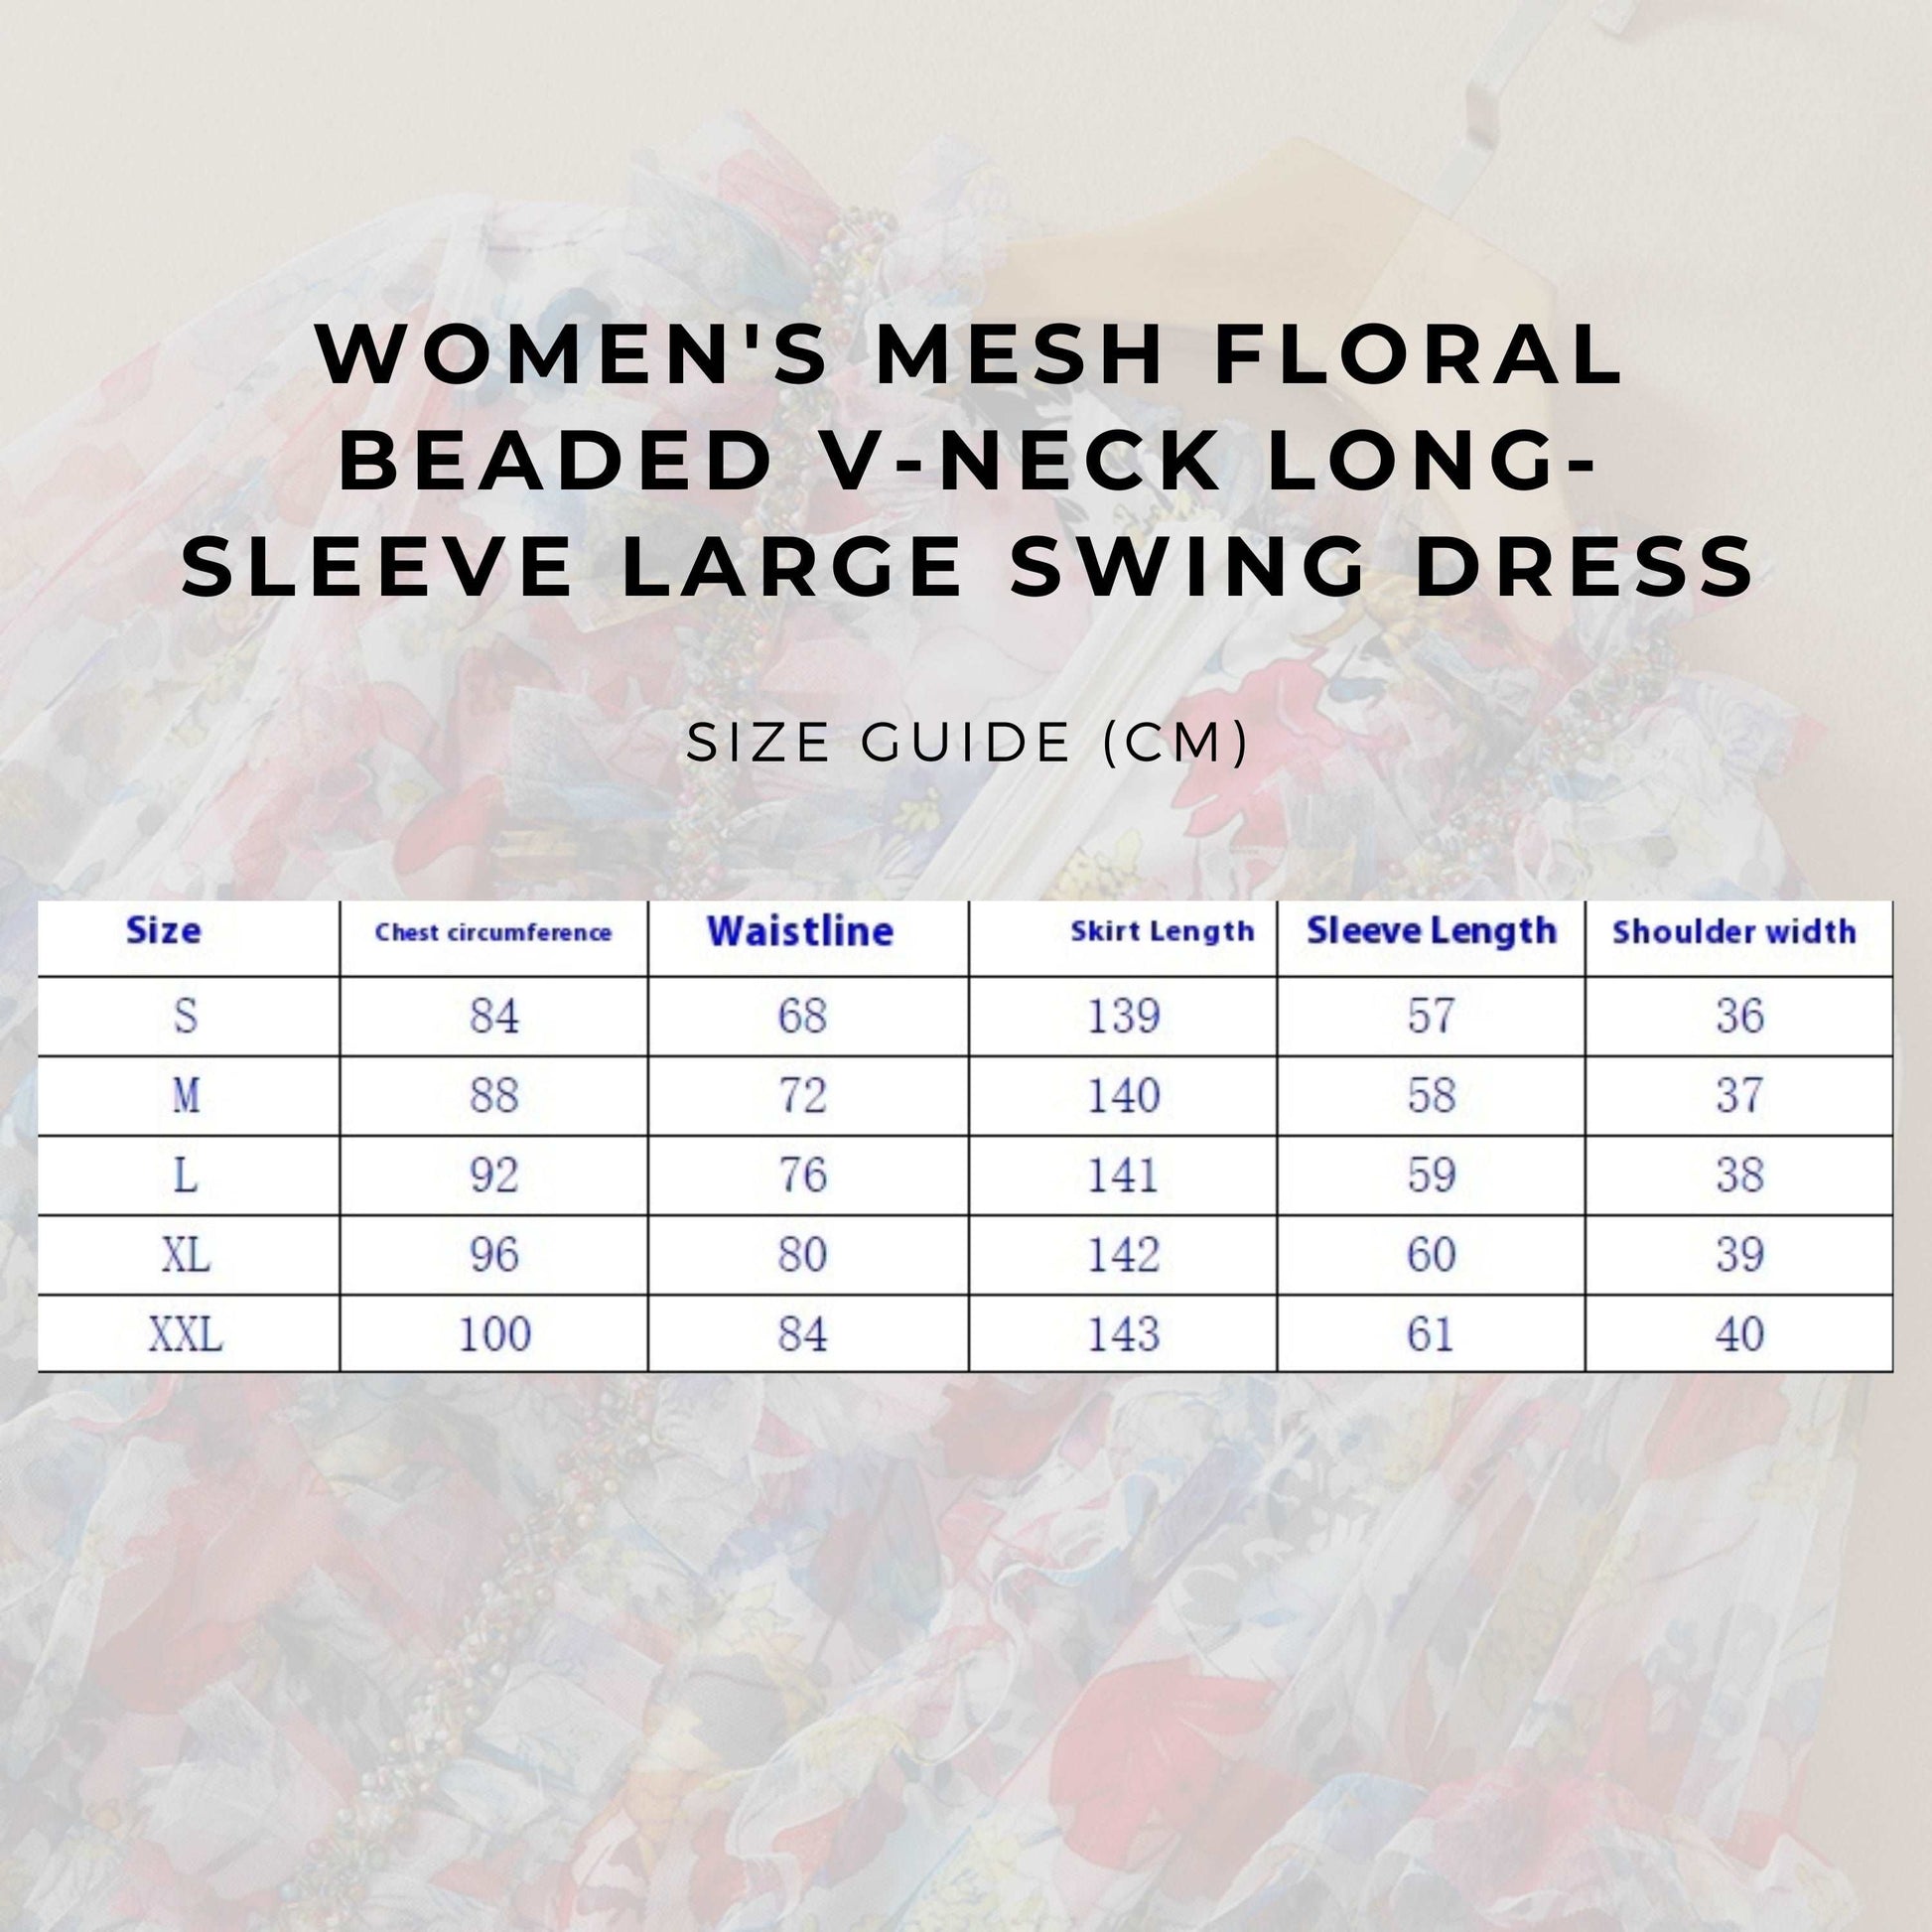 Women's Mesh Floral Beaded V-neck Long-sleeve Large Swing Dress